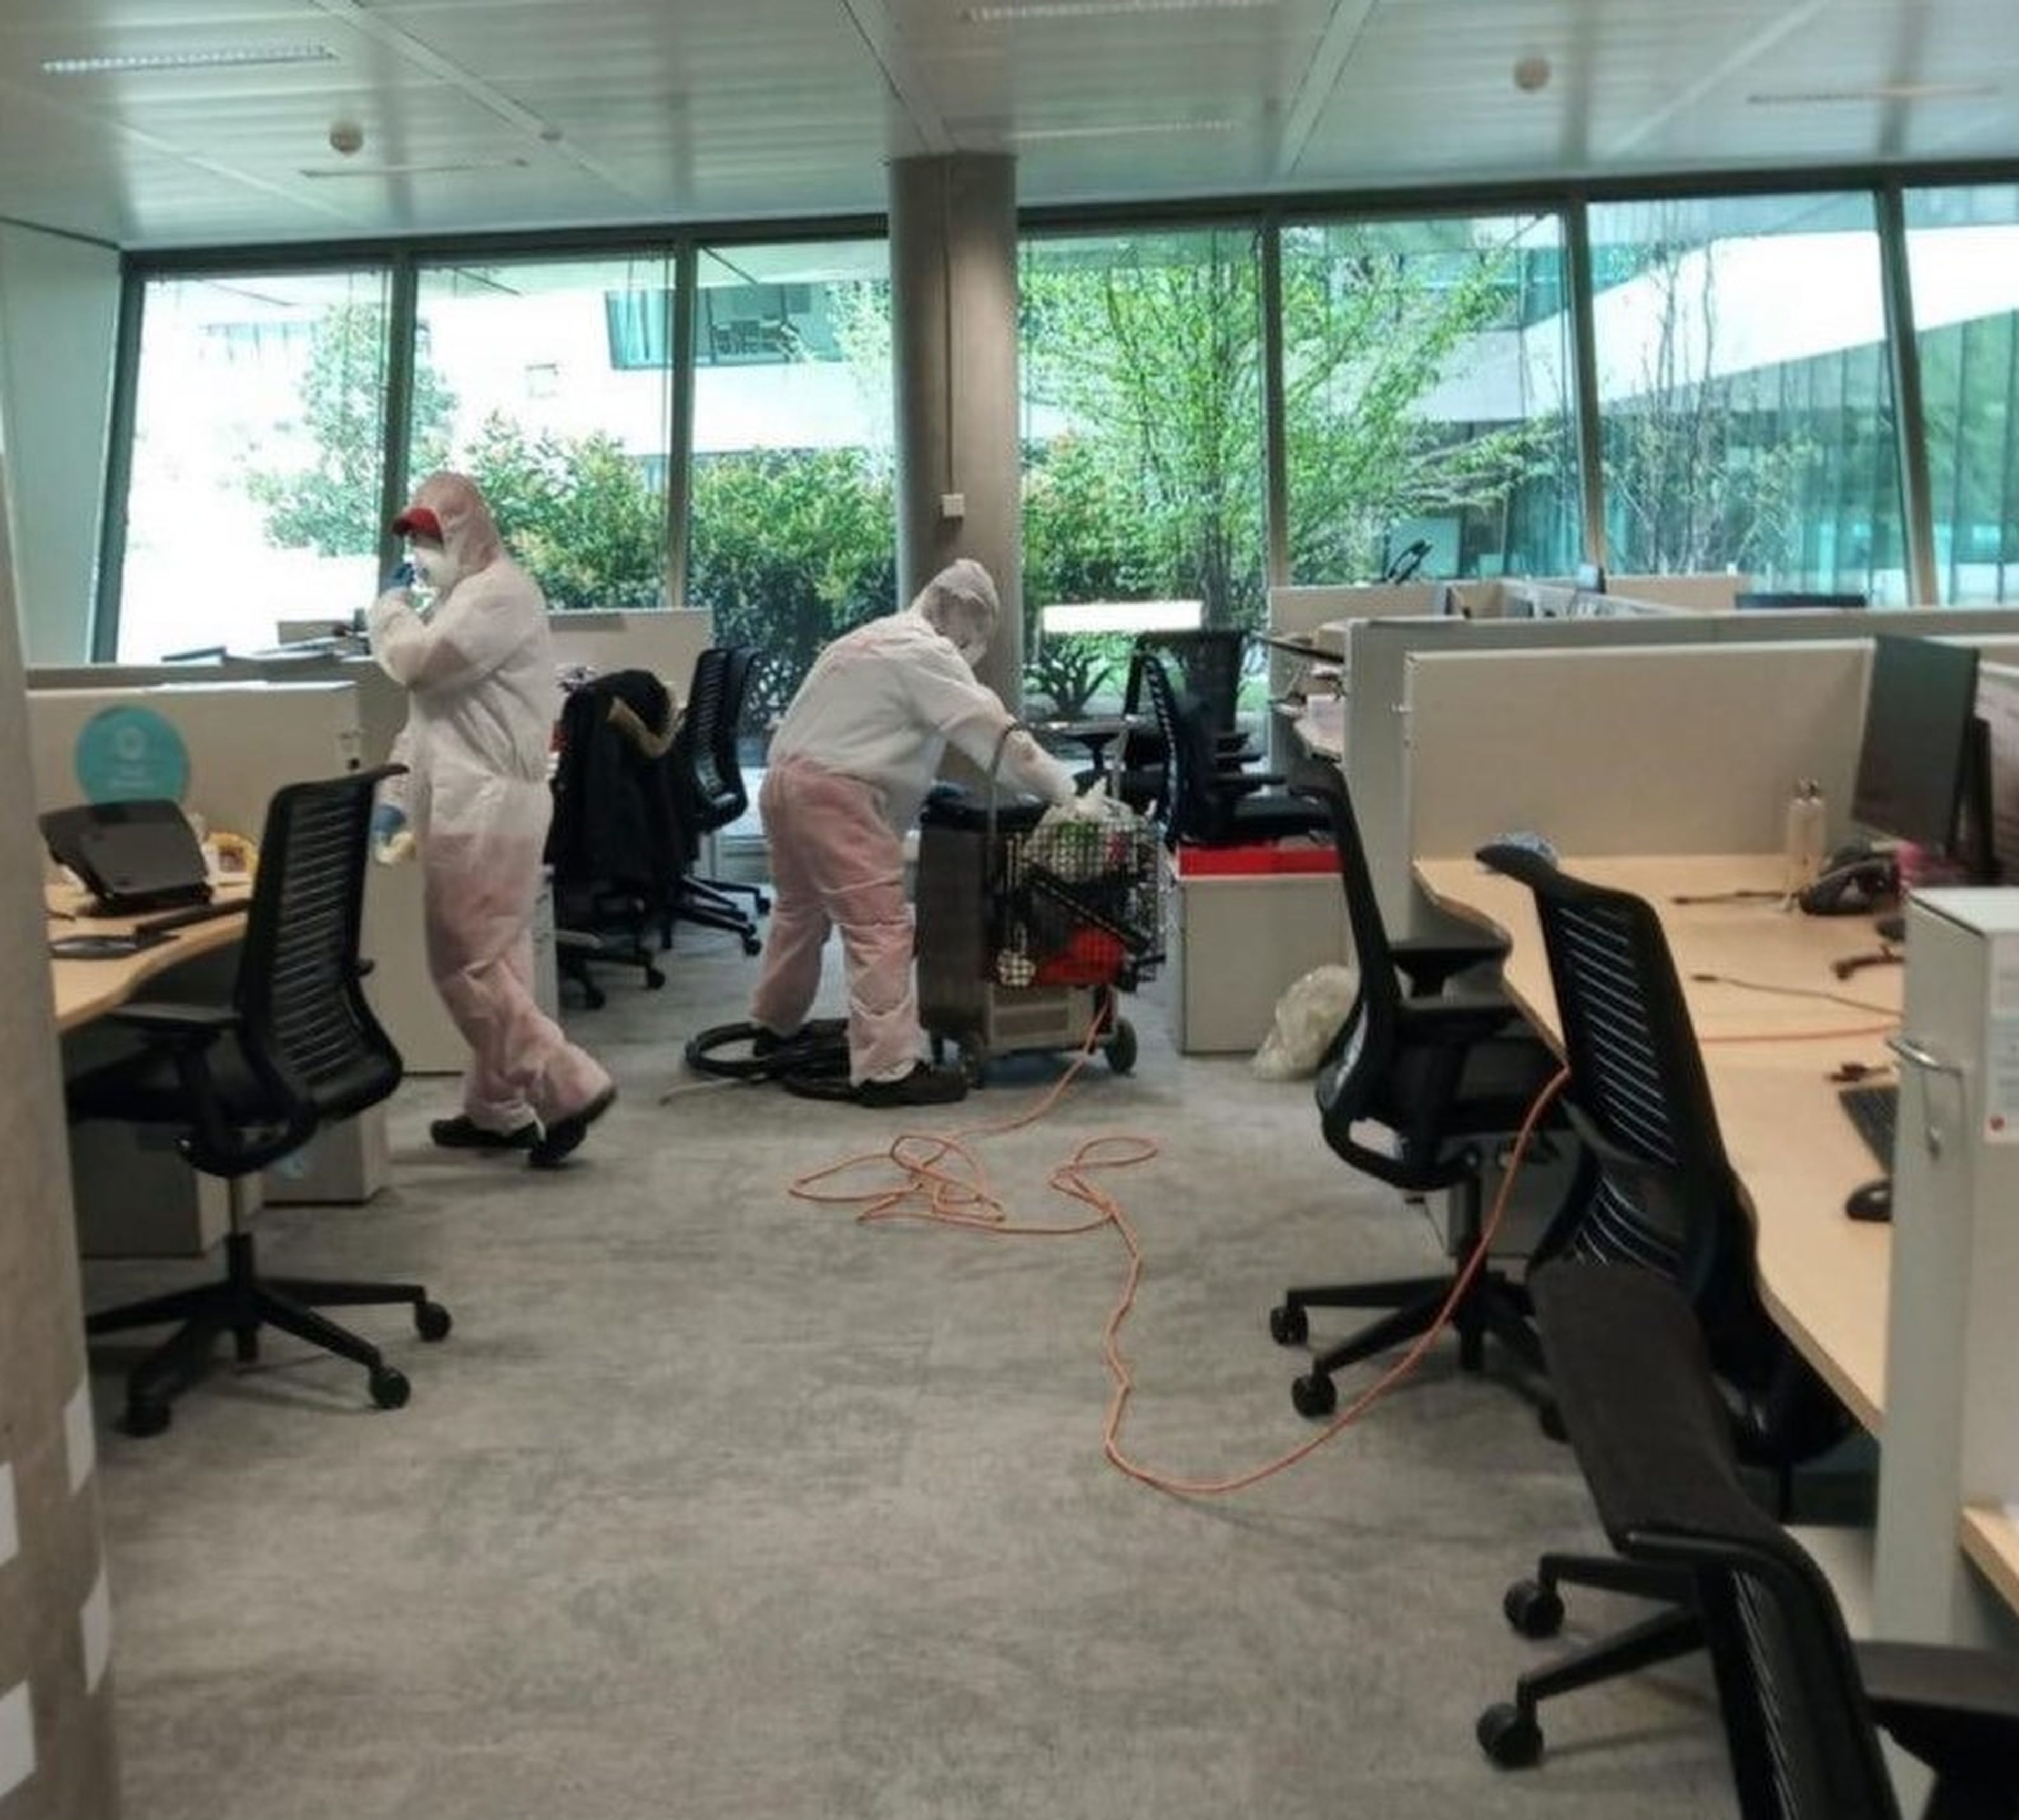 Dos personas limpiando la sede del banco Santander en Boadilla, en Madrid, al inicio de la pandemia.